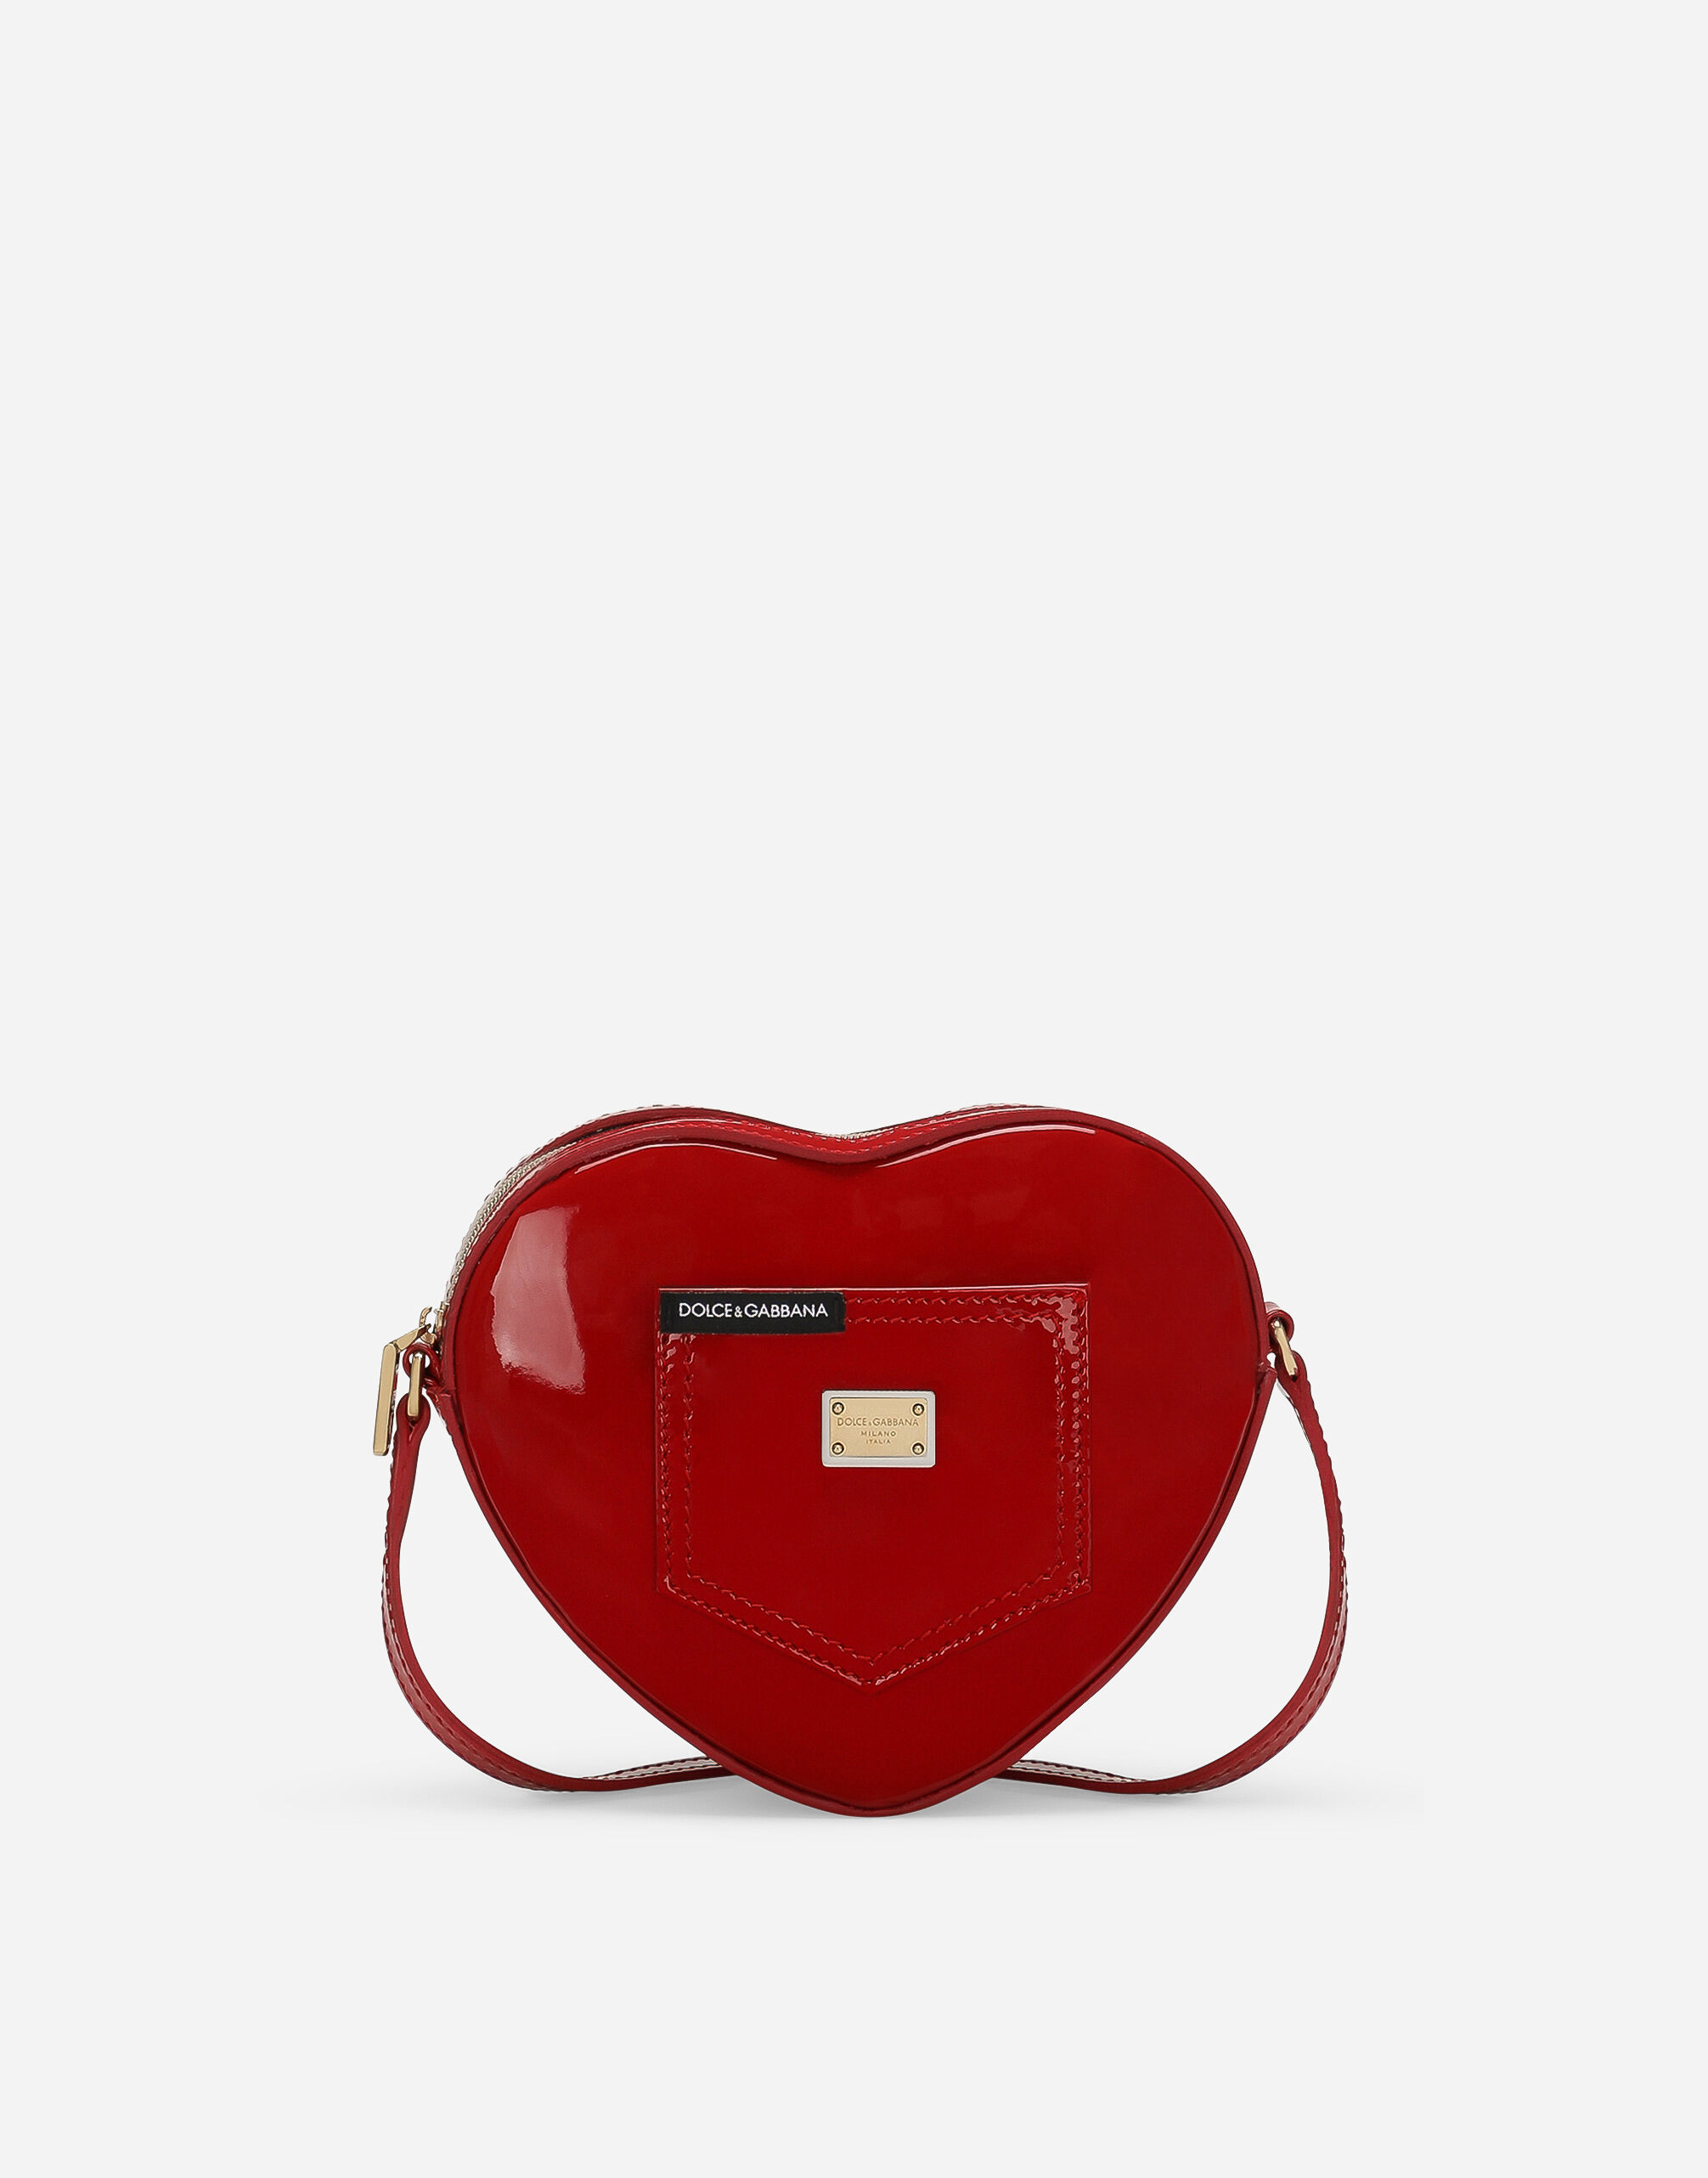 Dolce & Gabbana DG Girlie Heart 手袋 版画 L53DU9HS5Q4